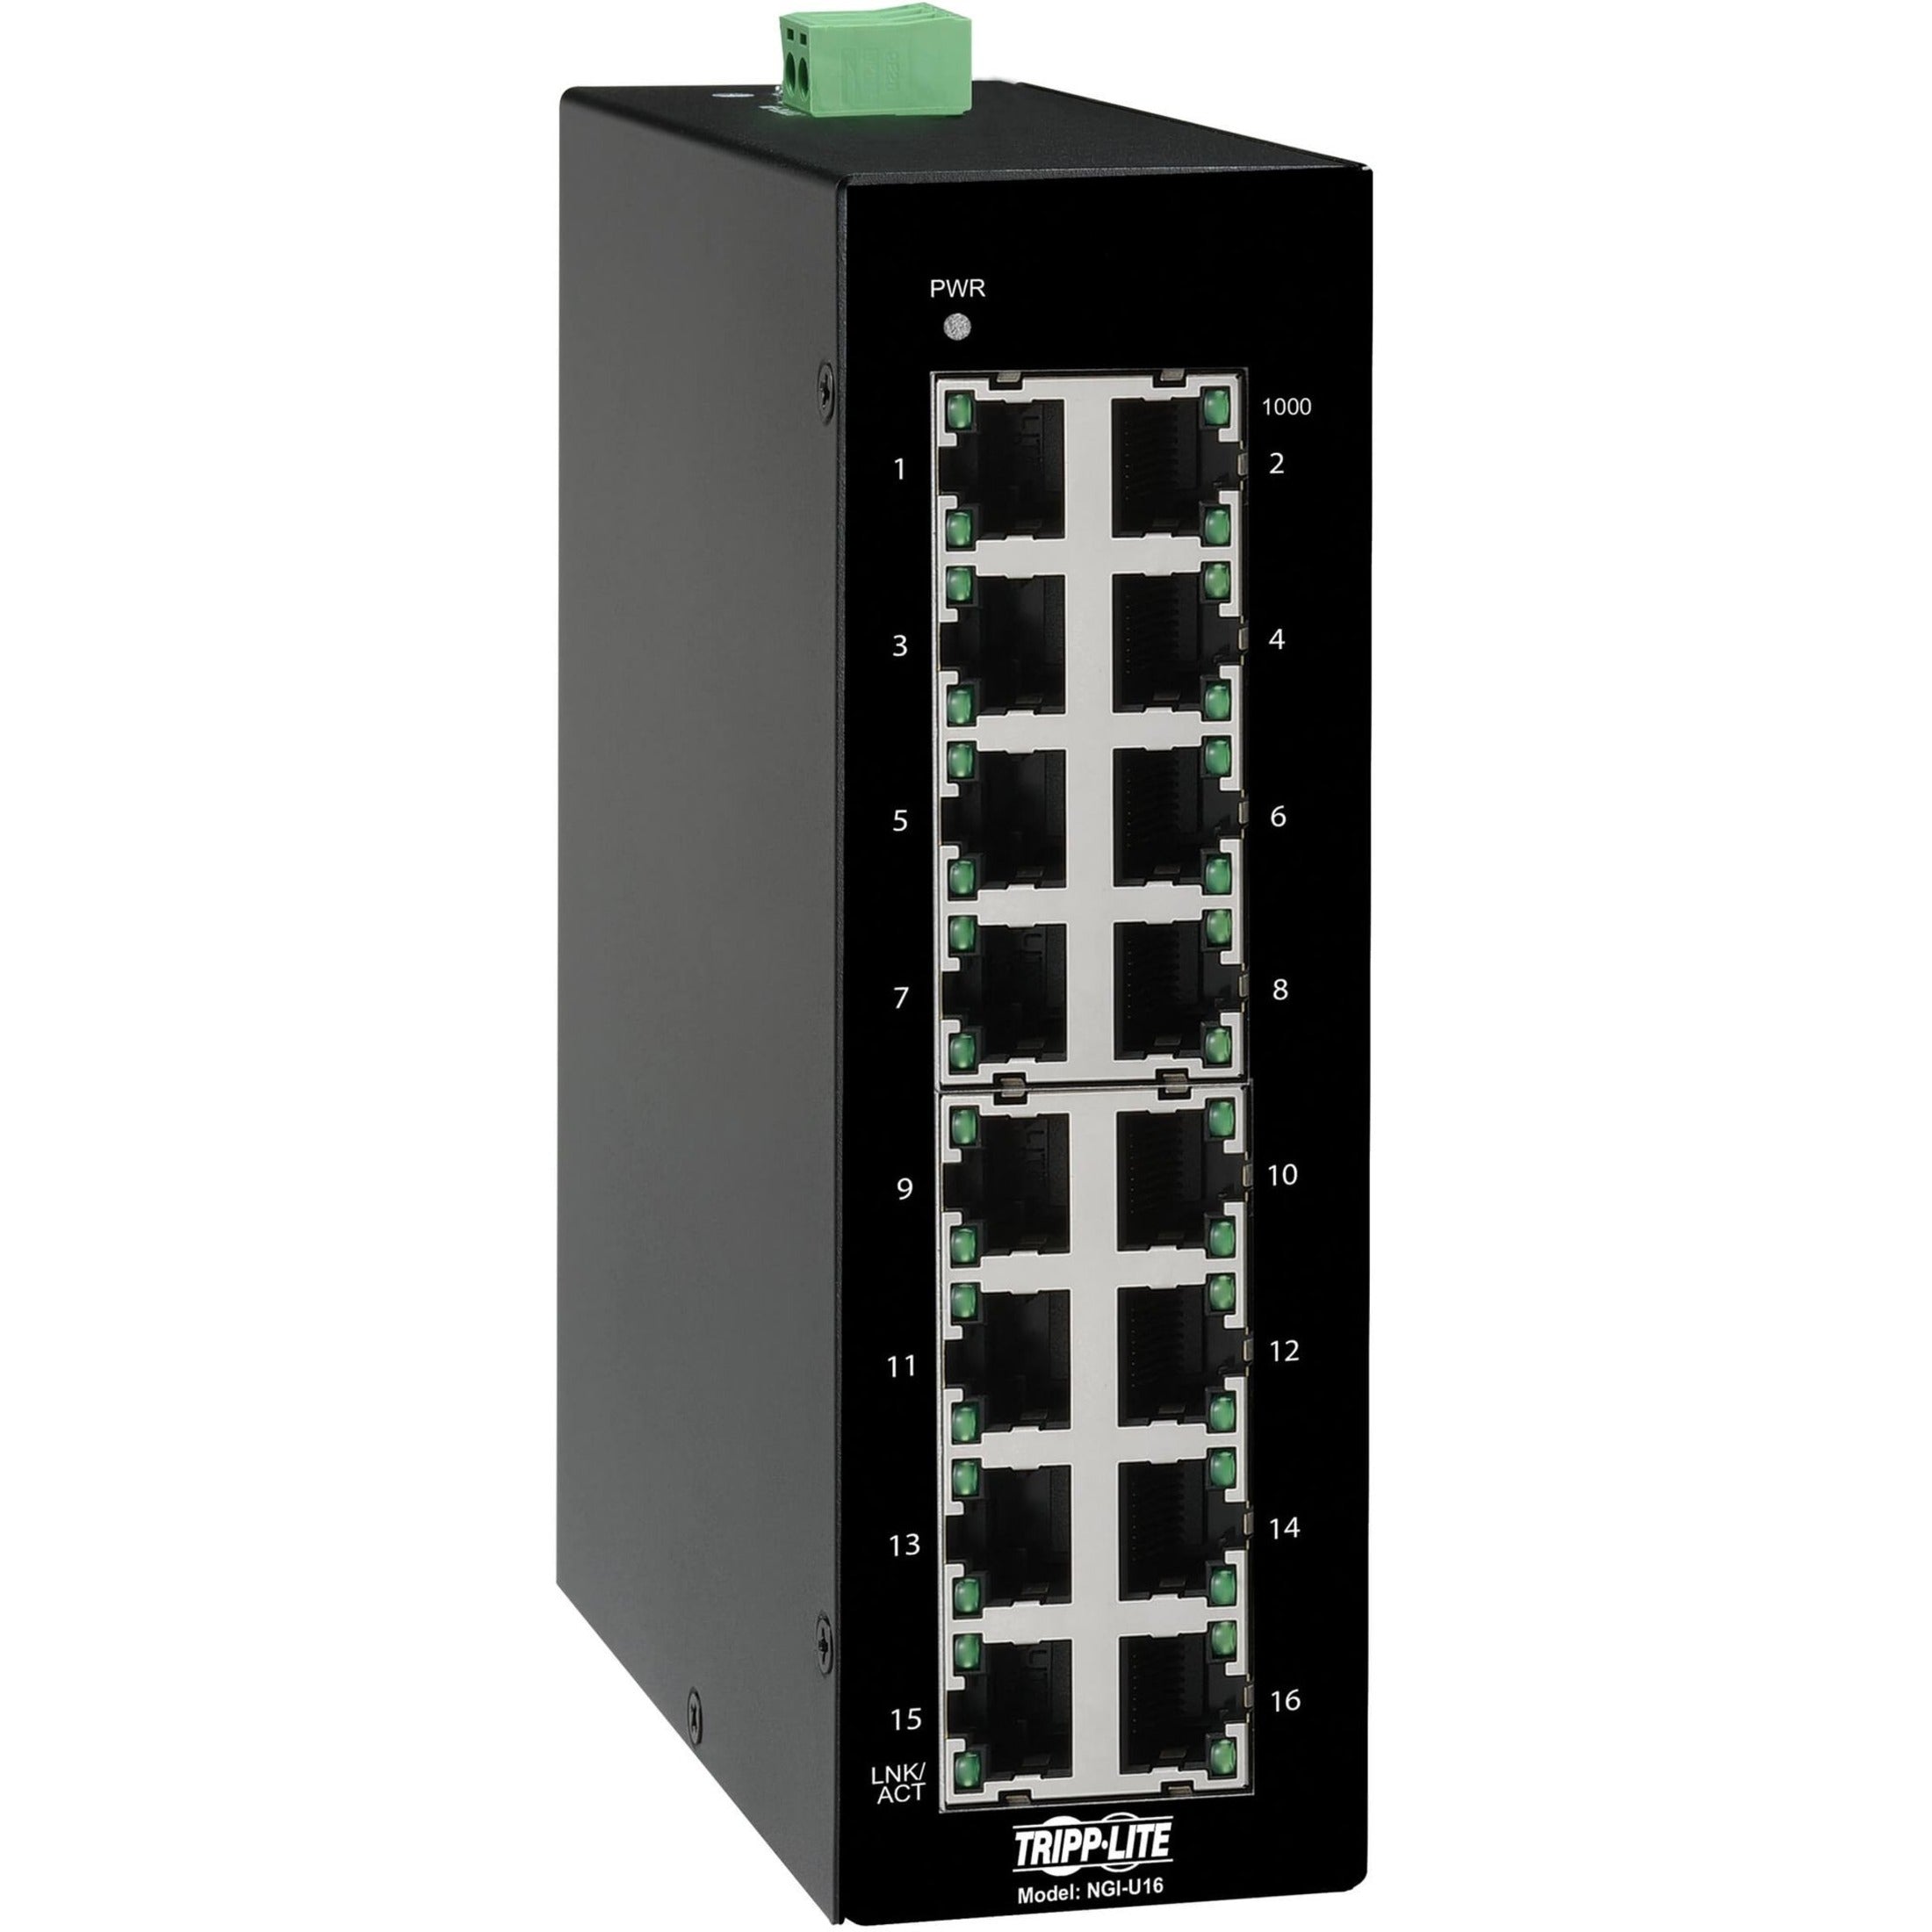 Tripp Lite NGI-U16 Ethernet Switch Unmanaged 16-Port Industrial 10/100/1000 Mbps DIN